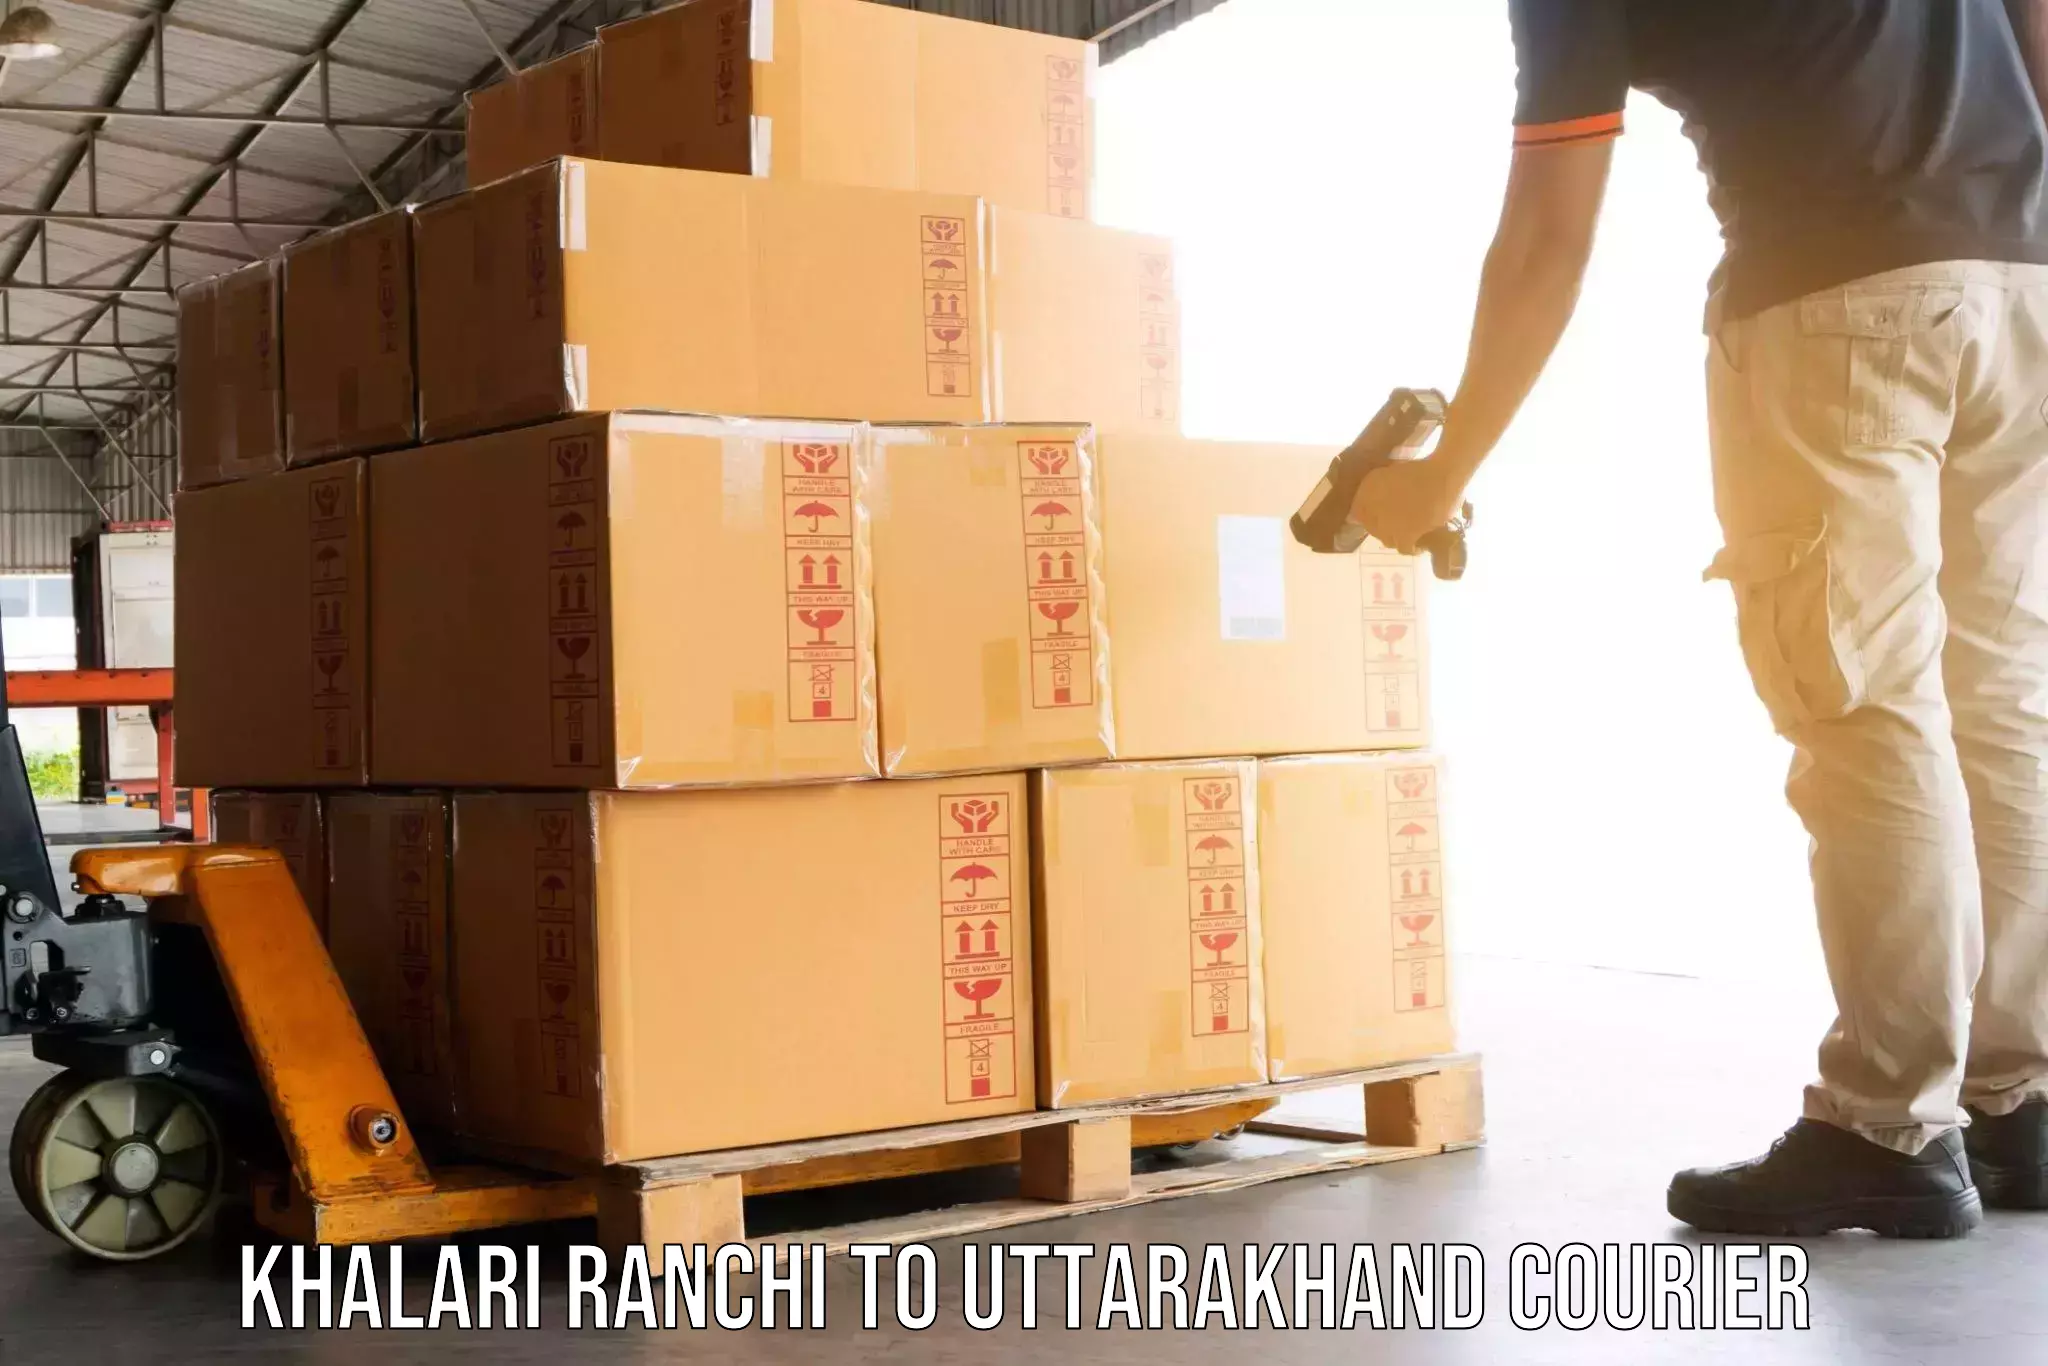 Household moving experts Khalari Ranchi to Uttarakhand